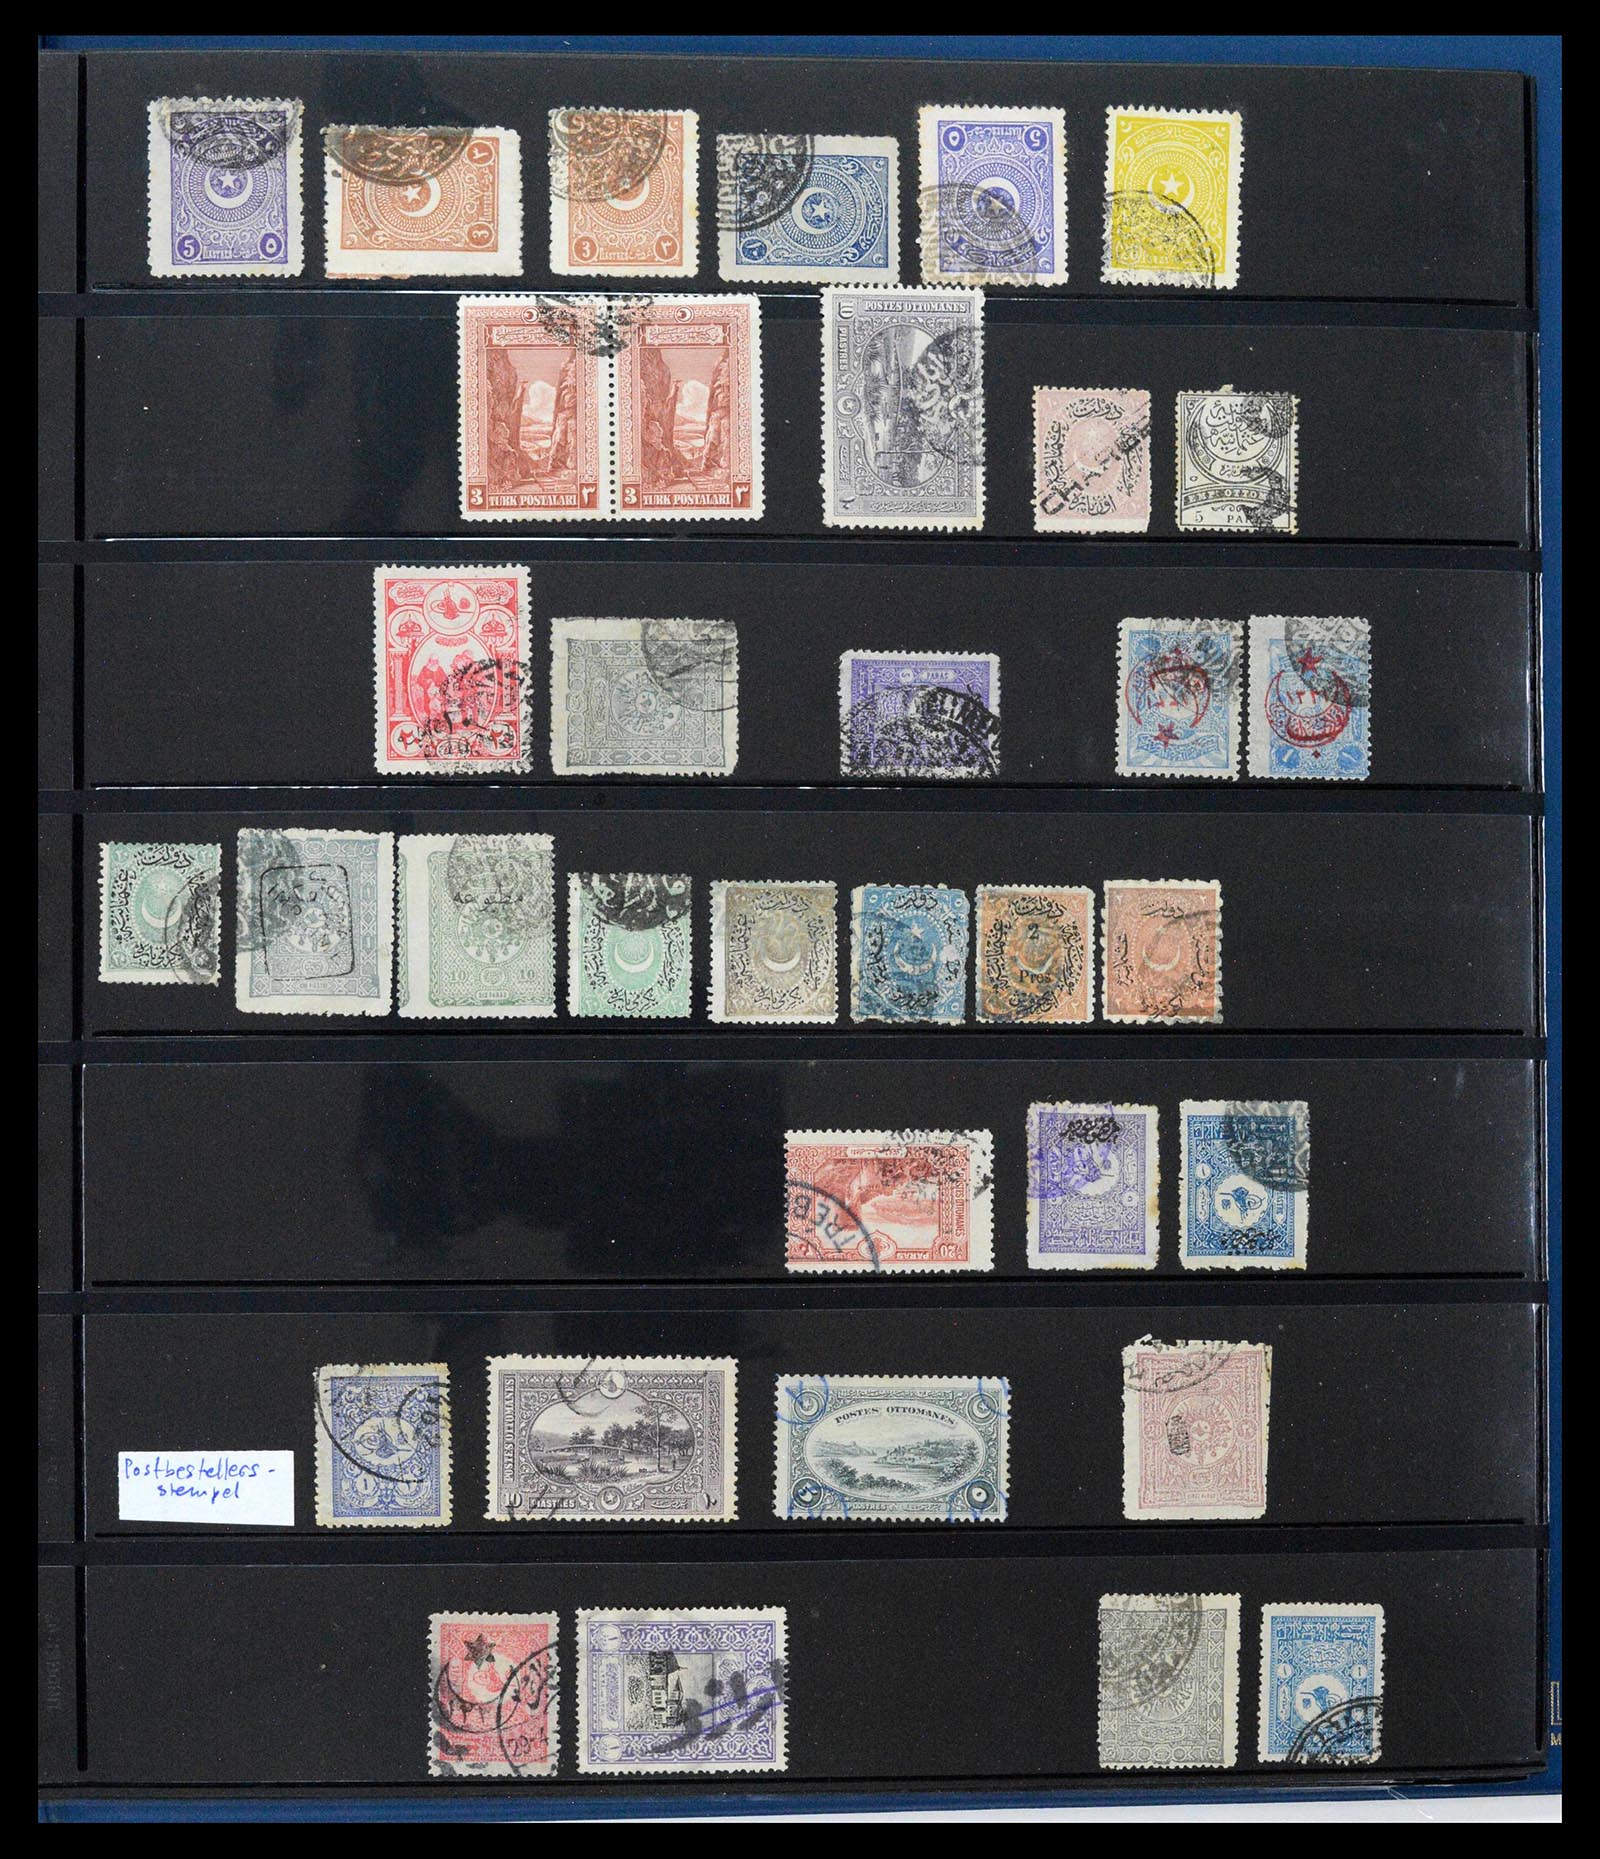 39345 0425 - Postzegelverzameling 39345 Turkije supercollectie stempels 1865-1930.